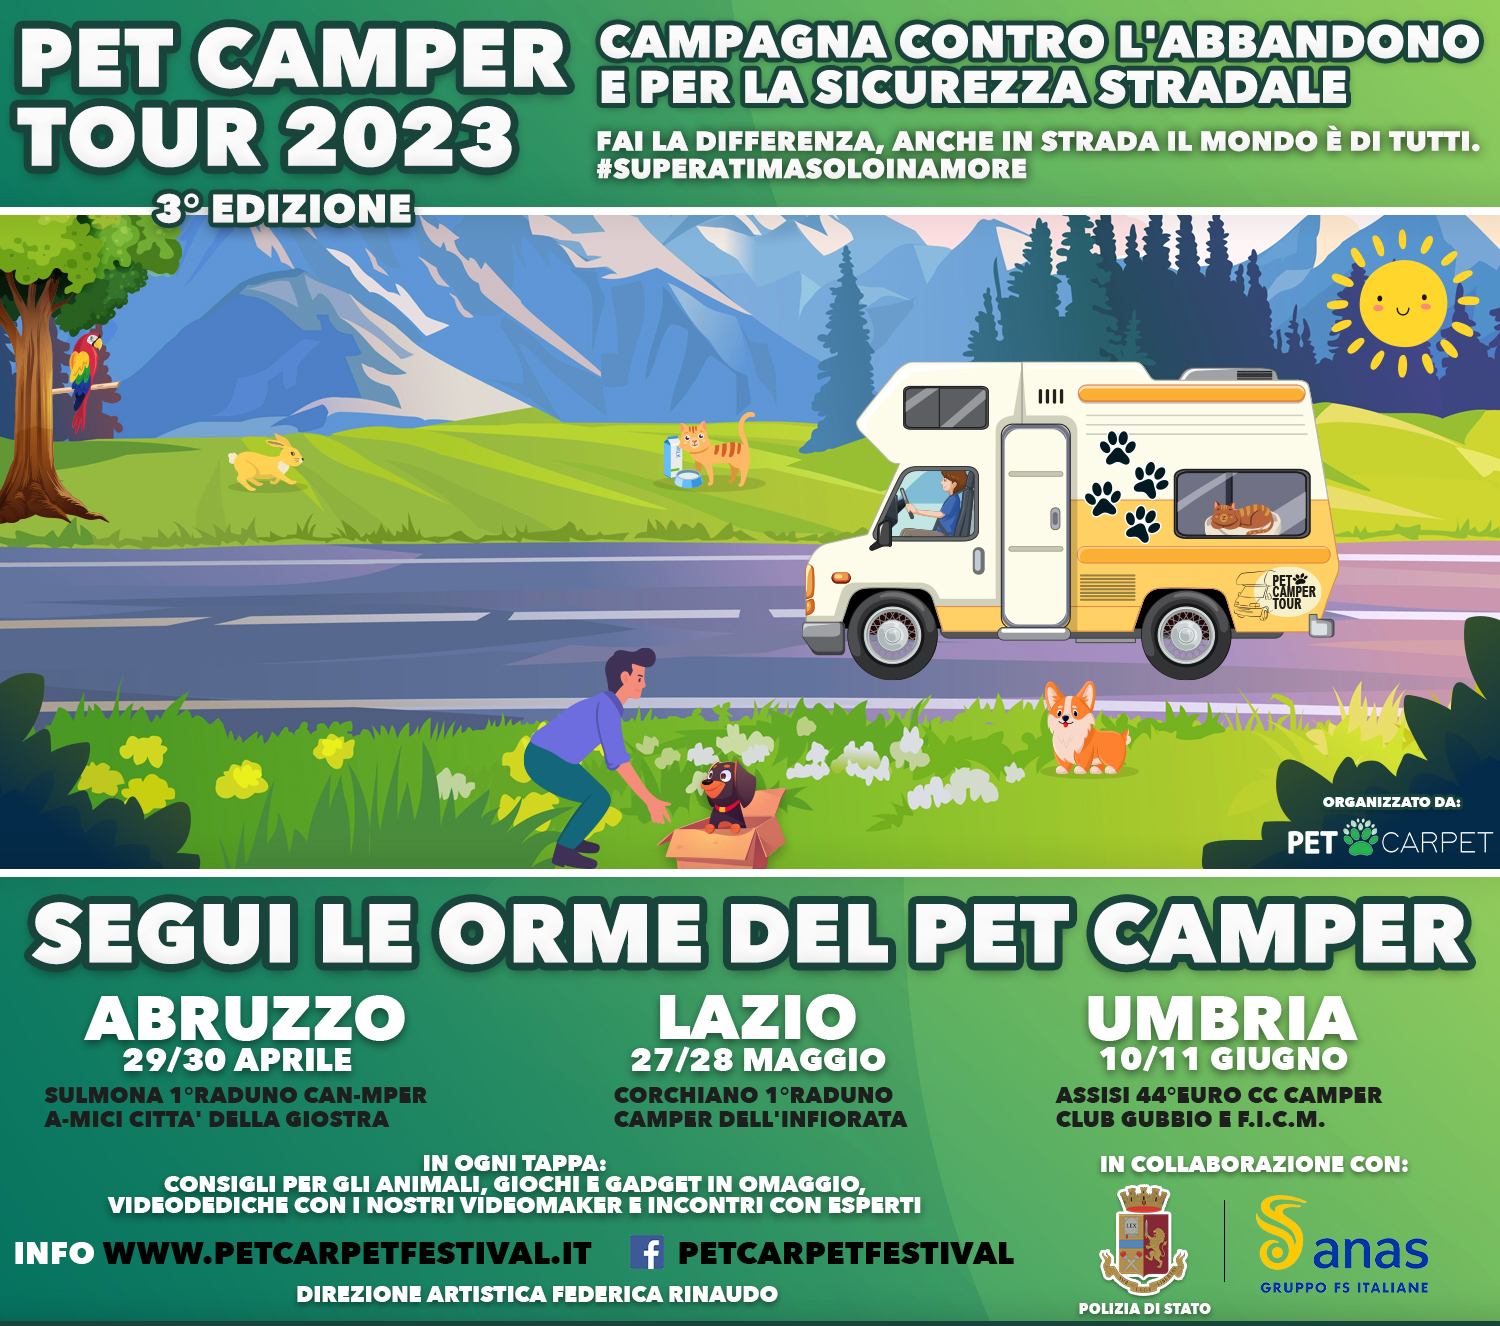 Pet Camper Tour, l’associazione Pet Carpet, Polizia di Stato, Anas, insieme contro l’abbandono e per la sicurezza stradale